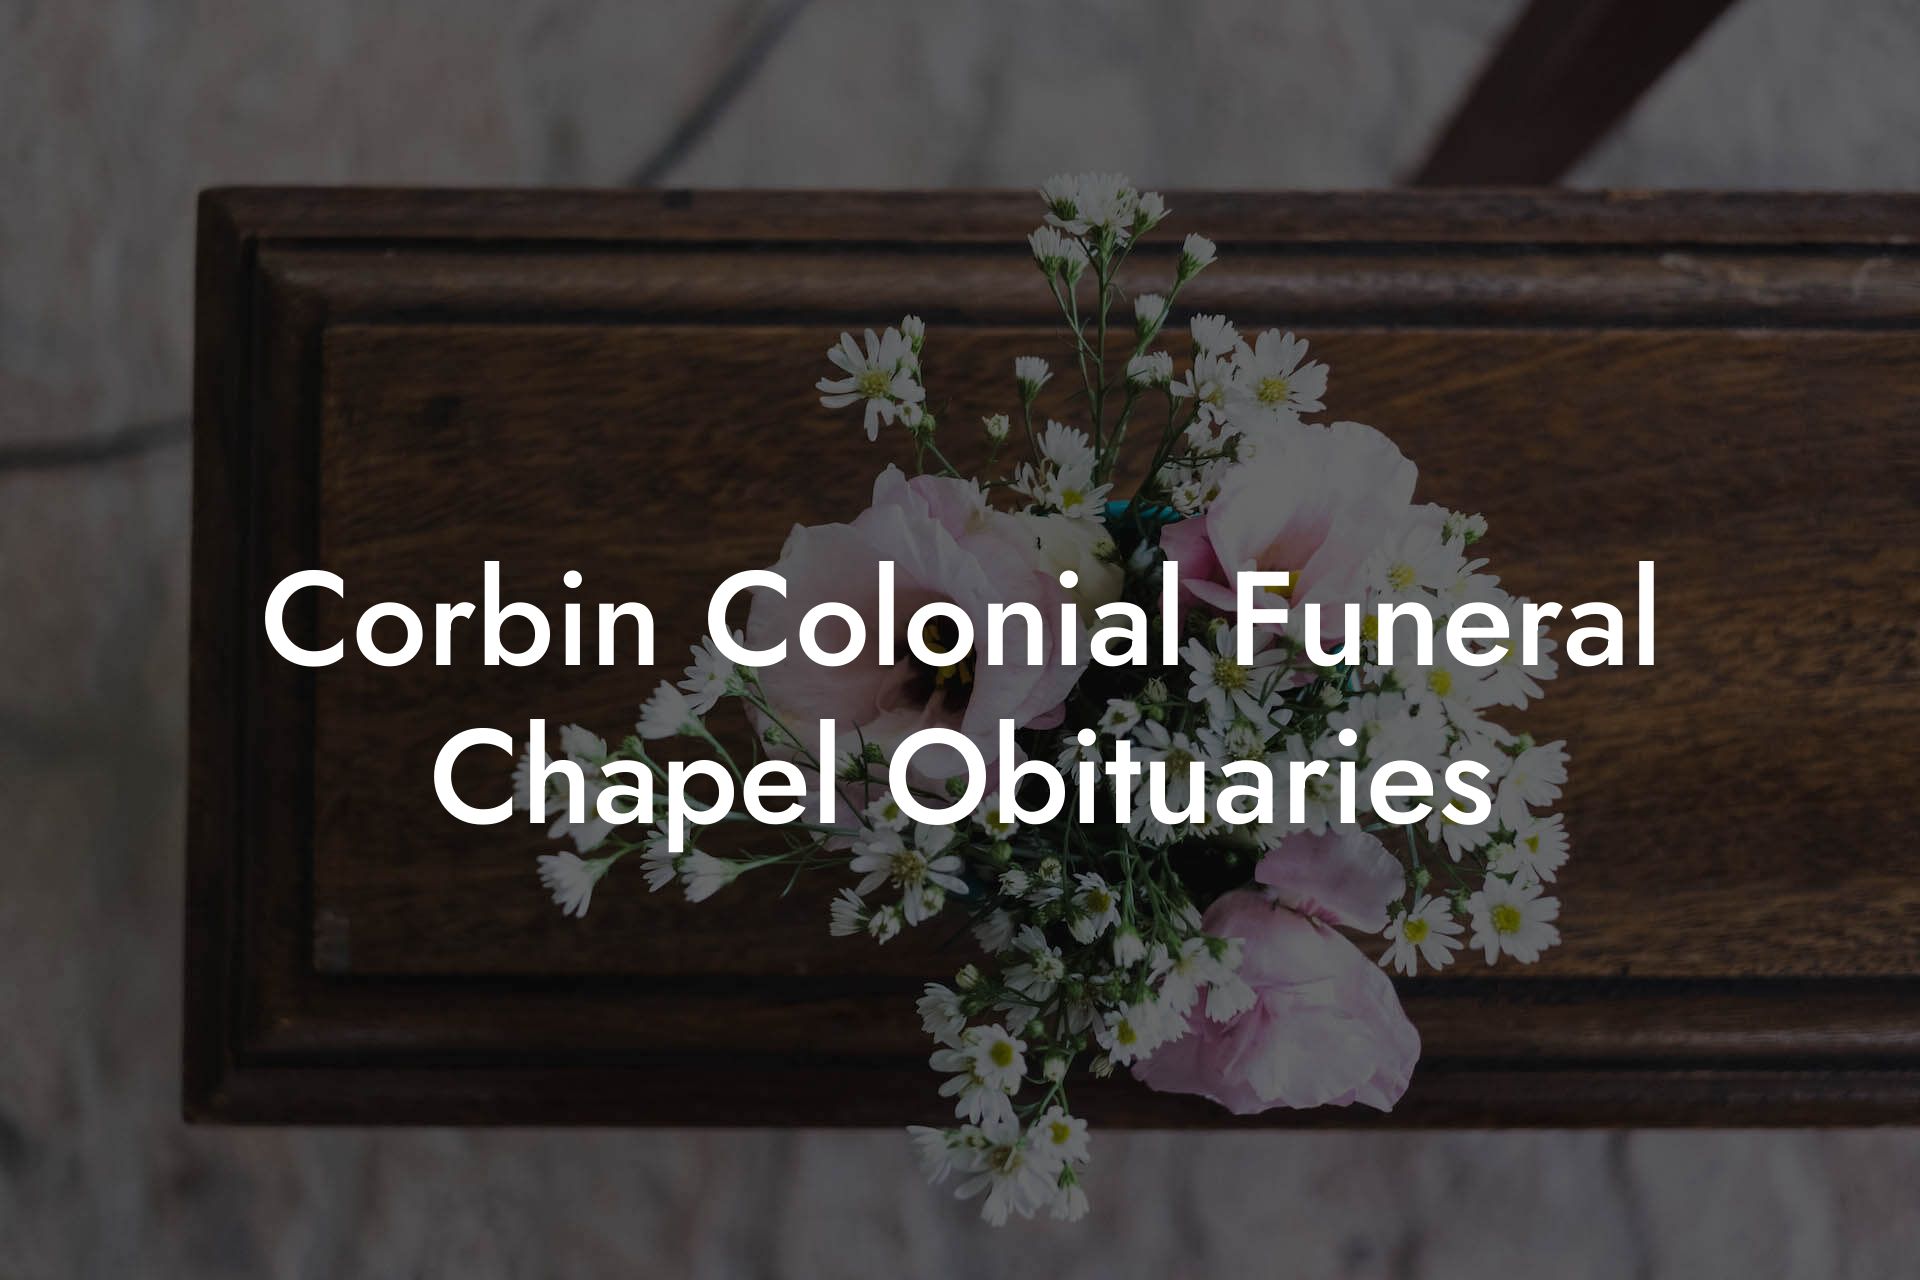 Corbin Colonial Funeral Chapel Obituaries